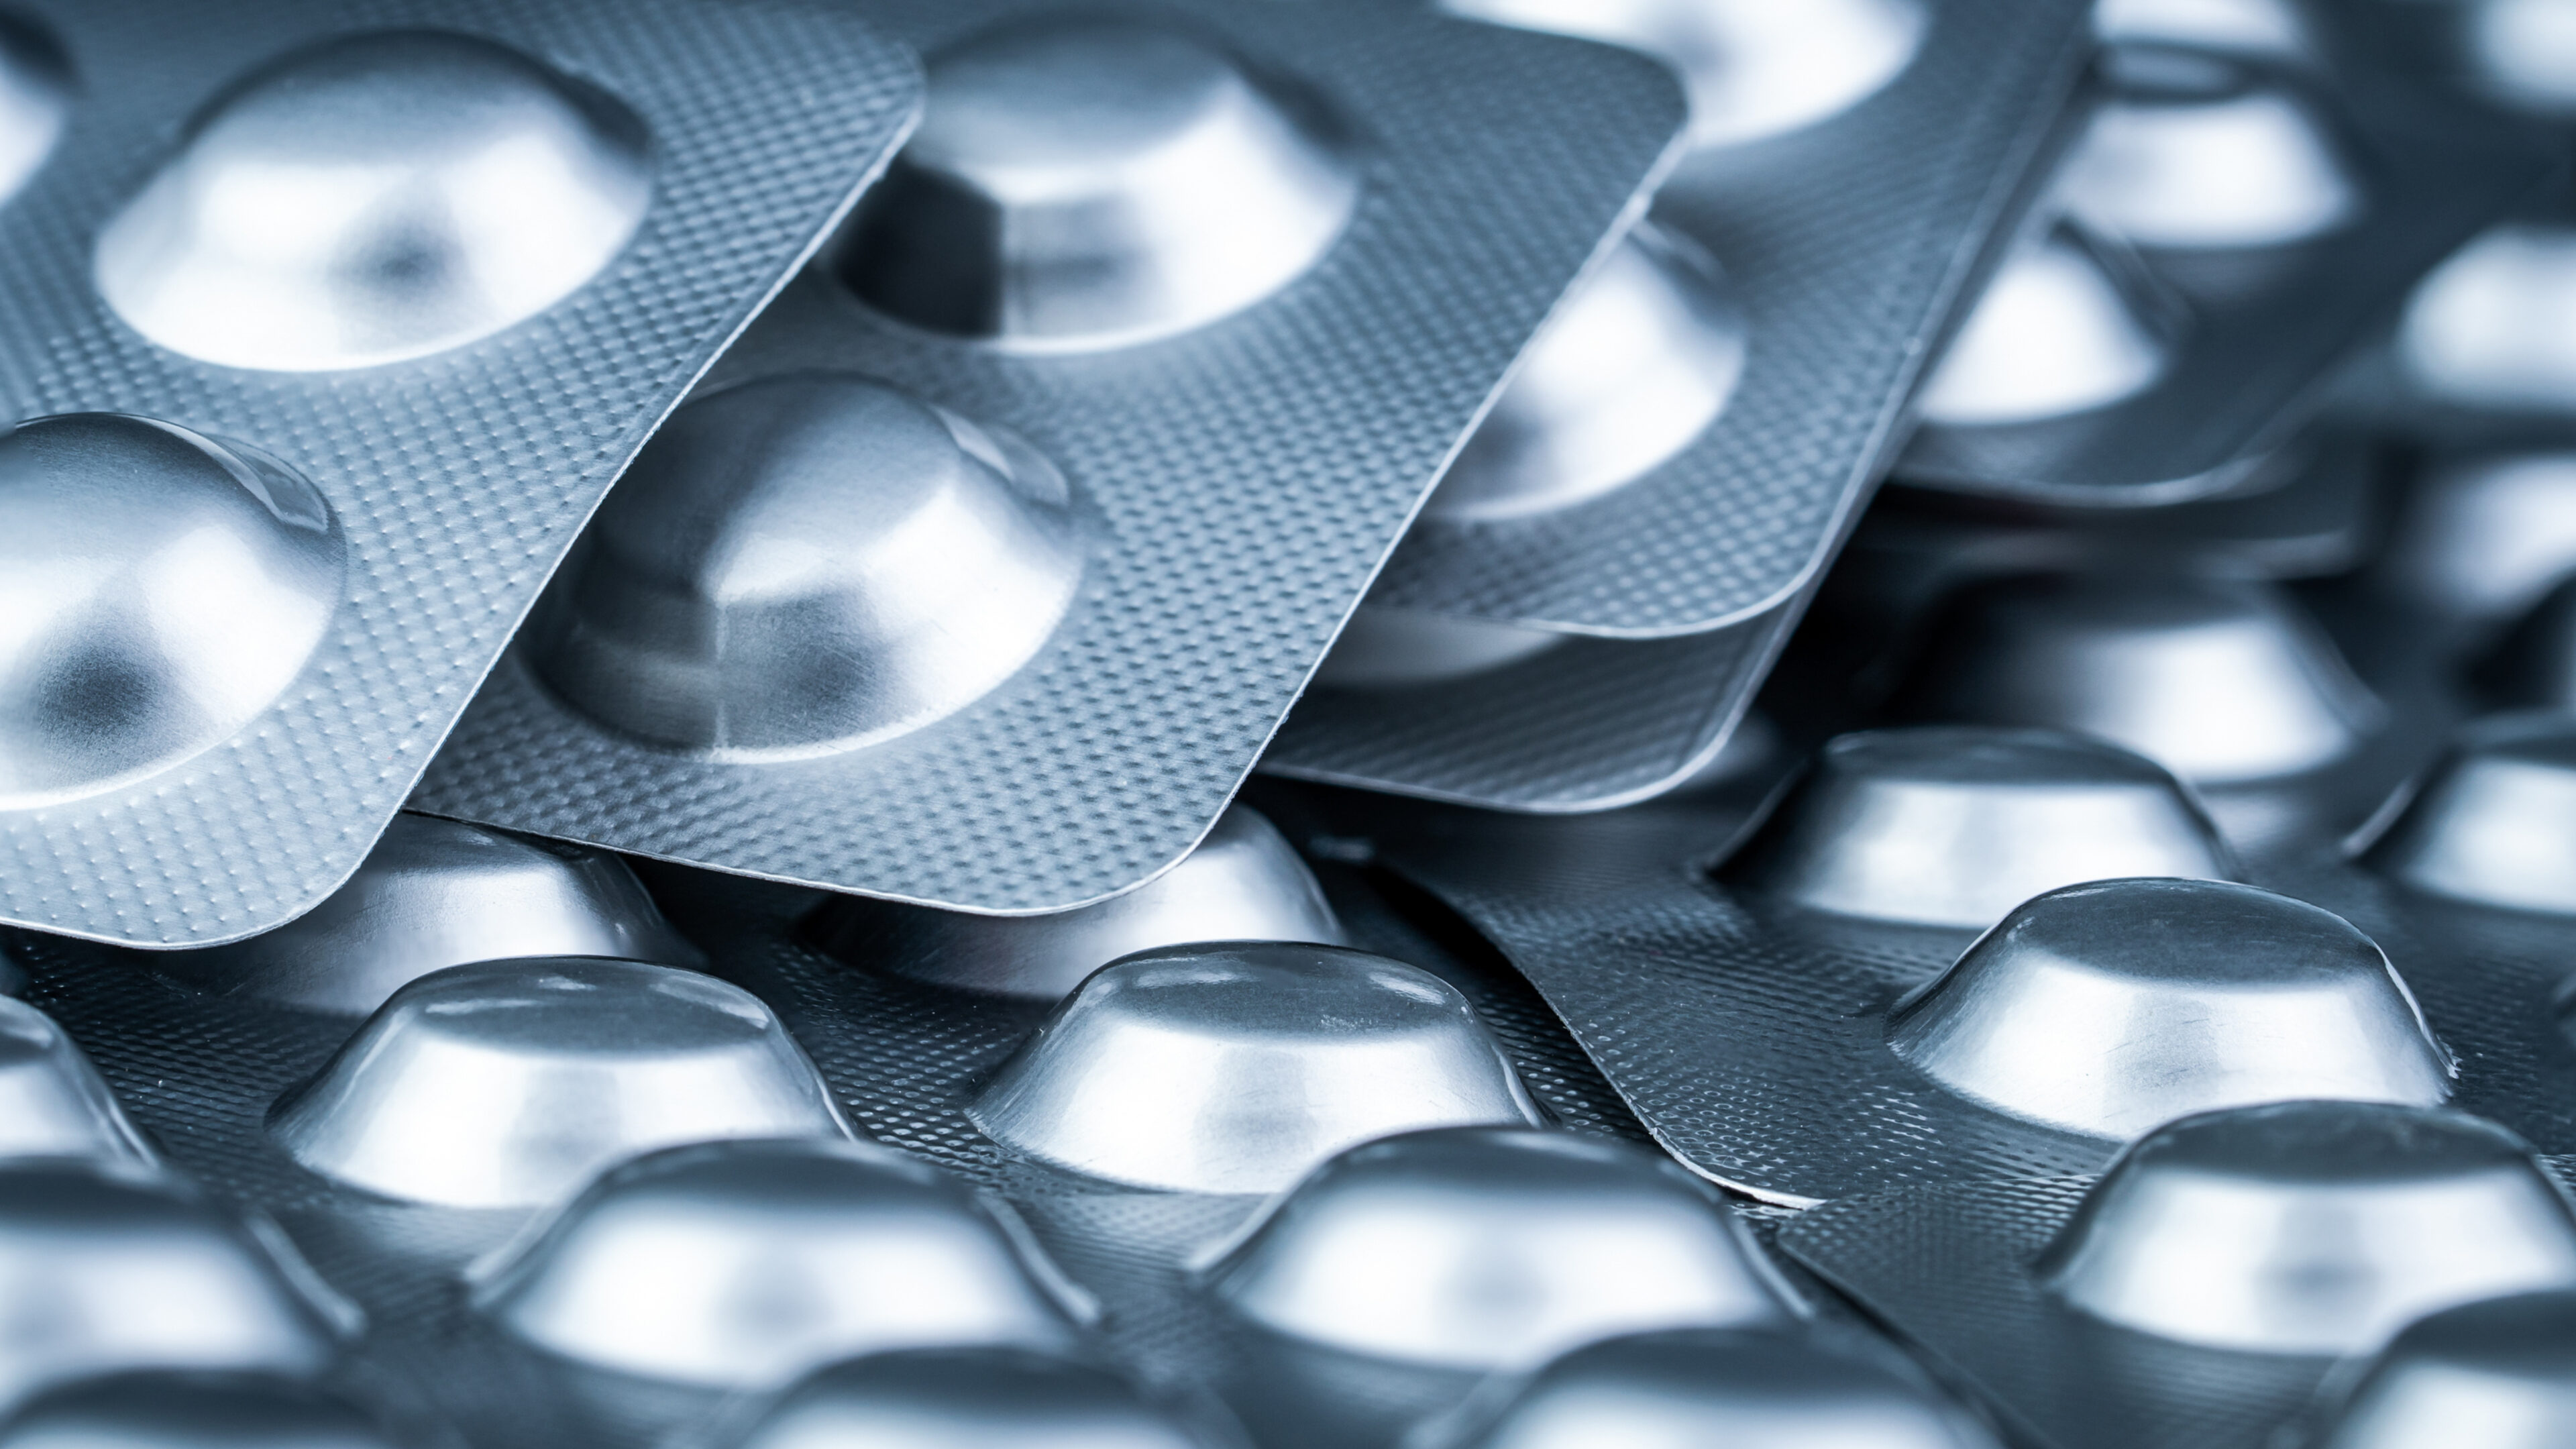 Tablettenstapel in Blisterverpackung in silberne Aluminiumfolie zum Schutz des Medikaments vor Licht